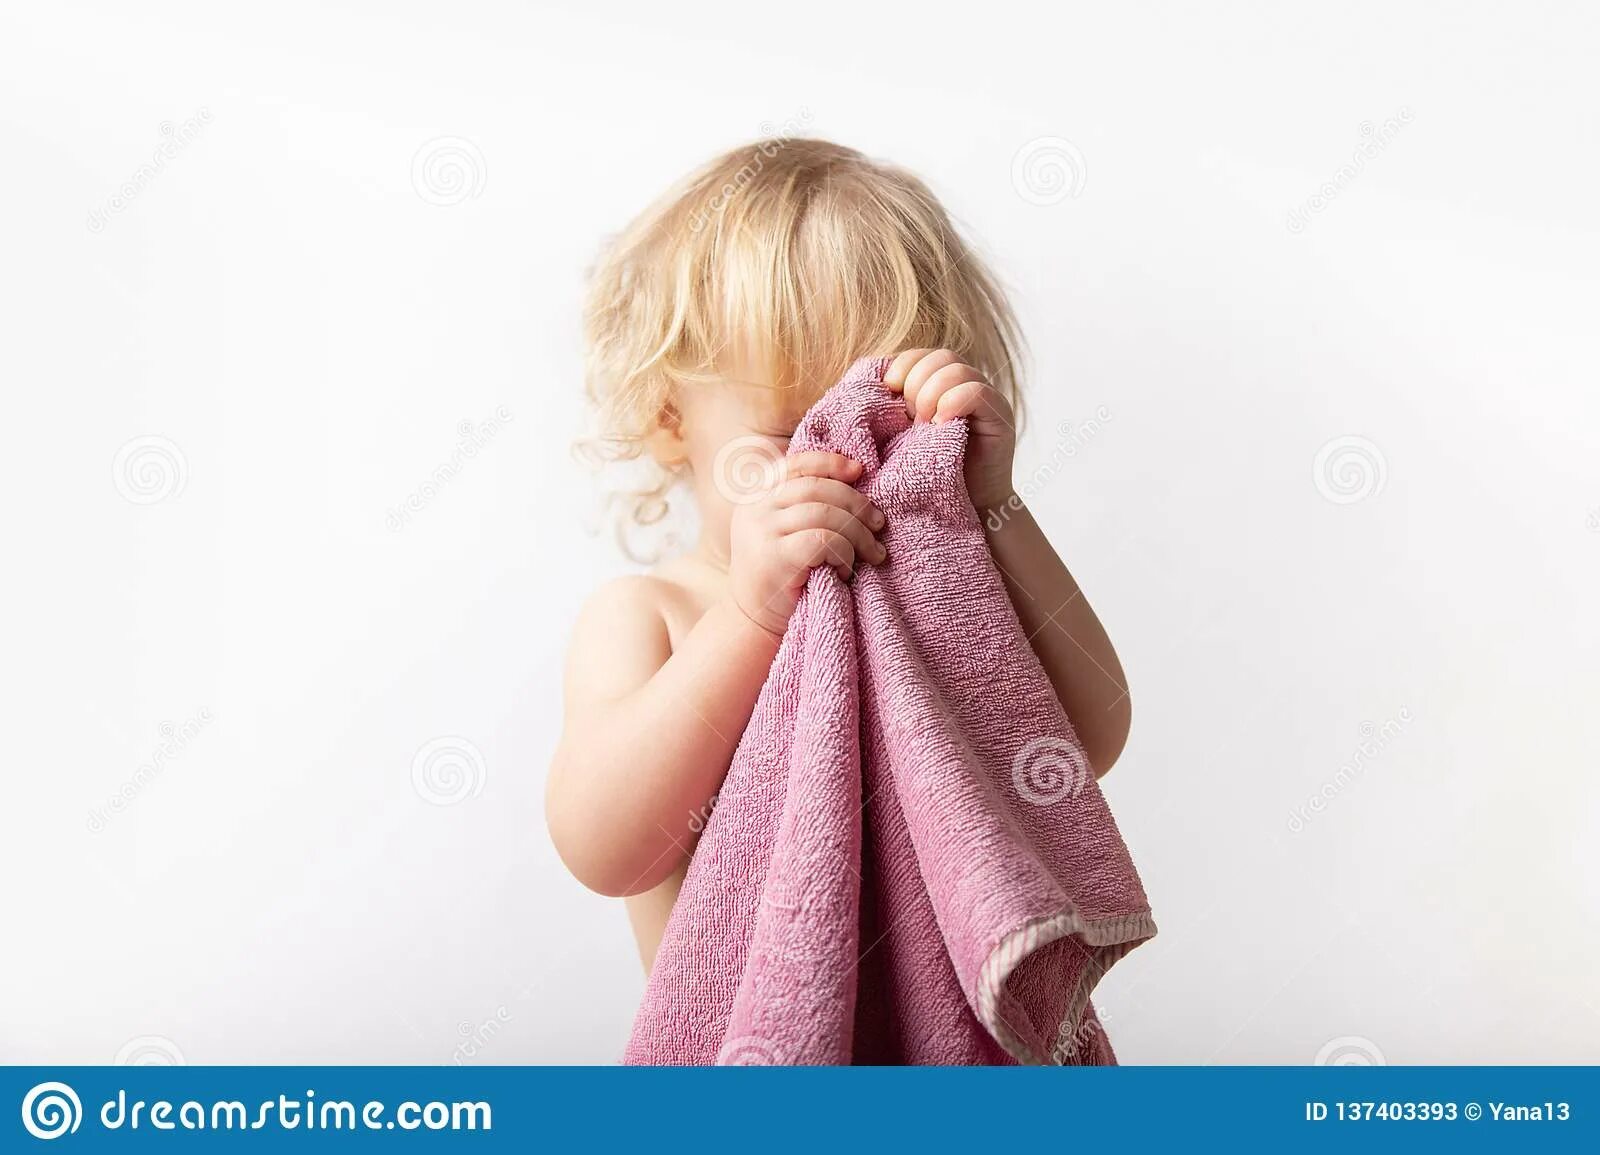 Вытираться полотенцем. Дети вытирают руки. Детки вытираются полотенцем. Девочка вытирает лицо полотенцем. Чужим полотенцем